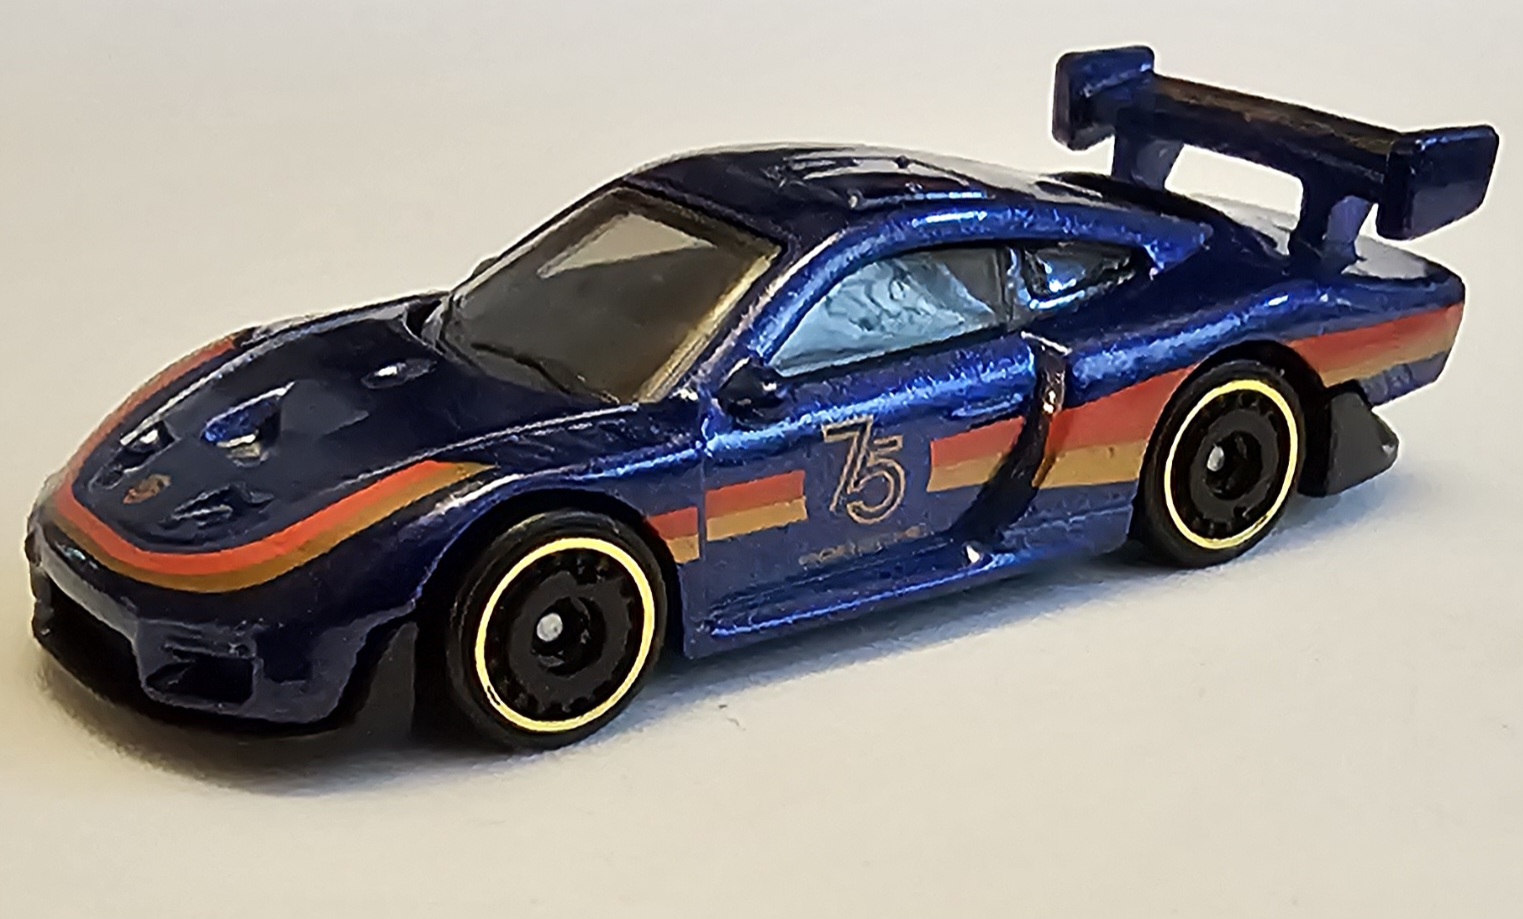 Porsche 935 (2022), Hot Wheels Wiki